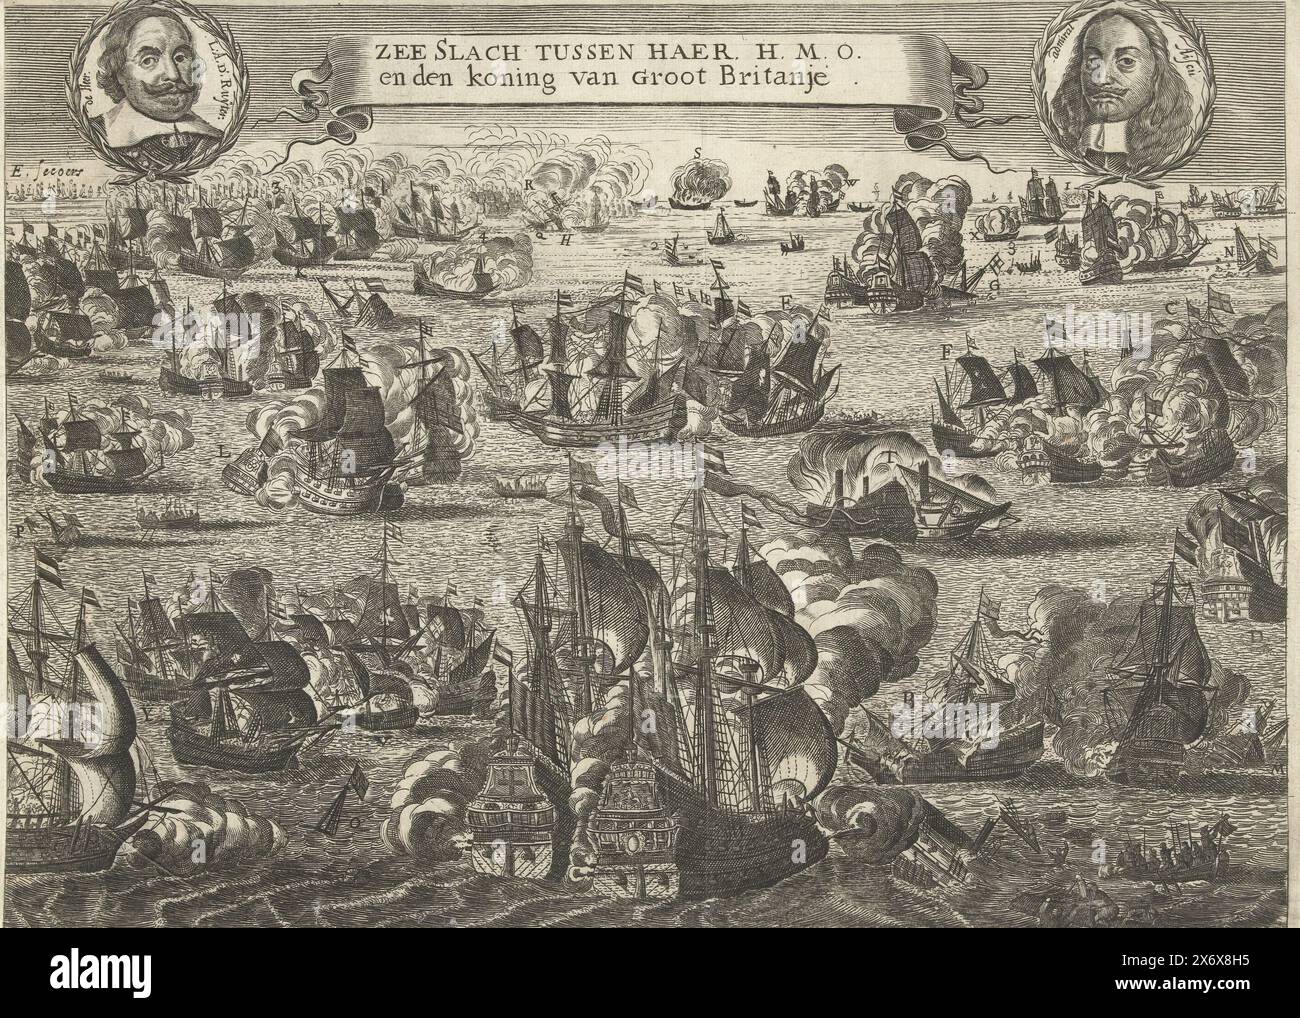 Four Days Battle, 1666, Sea Battle tra il suo H.M.O. e il re di Gran Bretagna (titolo sull'oggetto), la Four Days Battle tra la flotta olandese al comando dell'ammiraglio Michiel de Ruyter e la flotta inglese al comando dell'ammiraglio George Monck, 11-14 giugno 1666. In aria i ritratti di De Ruyter e dell'ammiraglio inglese Geroge Ayscue. I dettagli delle prestazioni sono indicati da A-Z e 1-4. Un foglio di testo accompagna la stampa., stampa, stampatore: Anonimo, Paesi Bassi del Nord, 1666, carta, incisione, incisione, altezza, 253 mm x larghezza, 349 mm Foto Stock